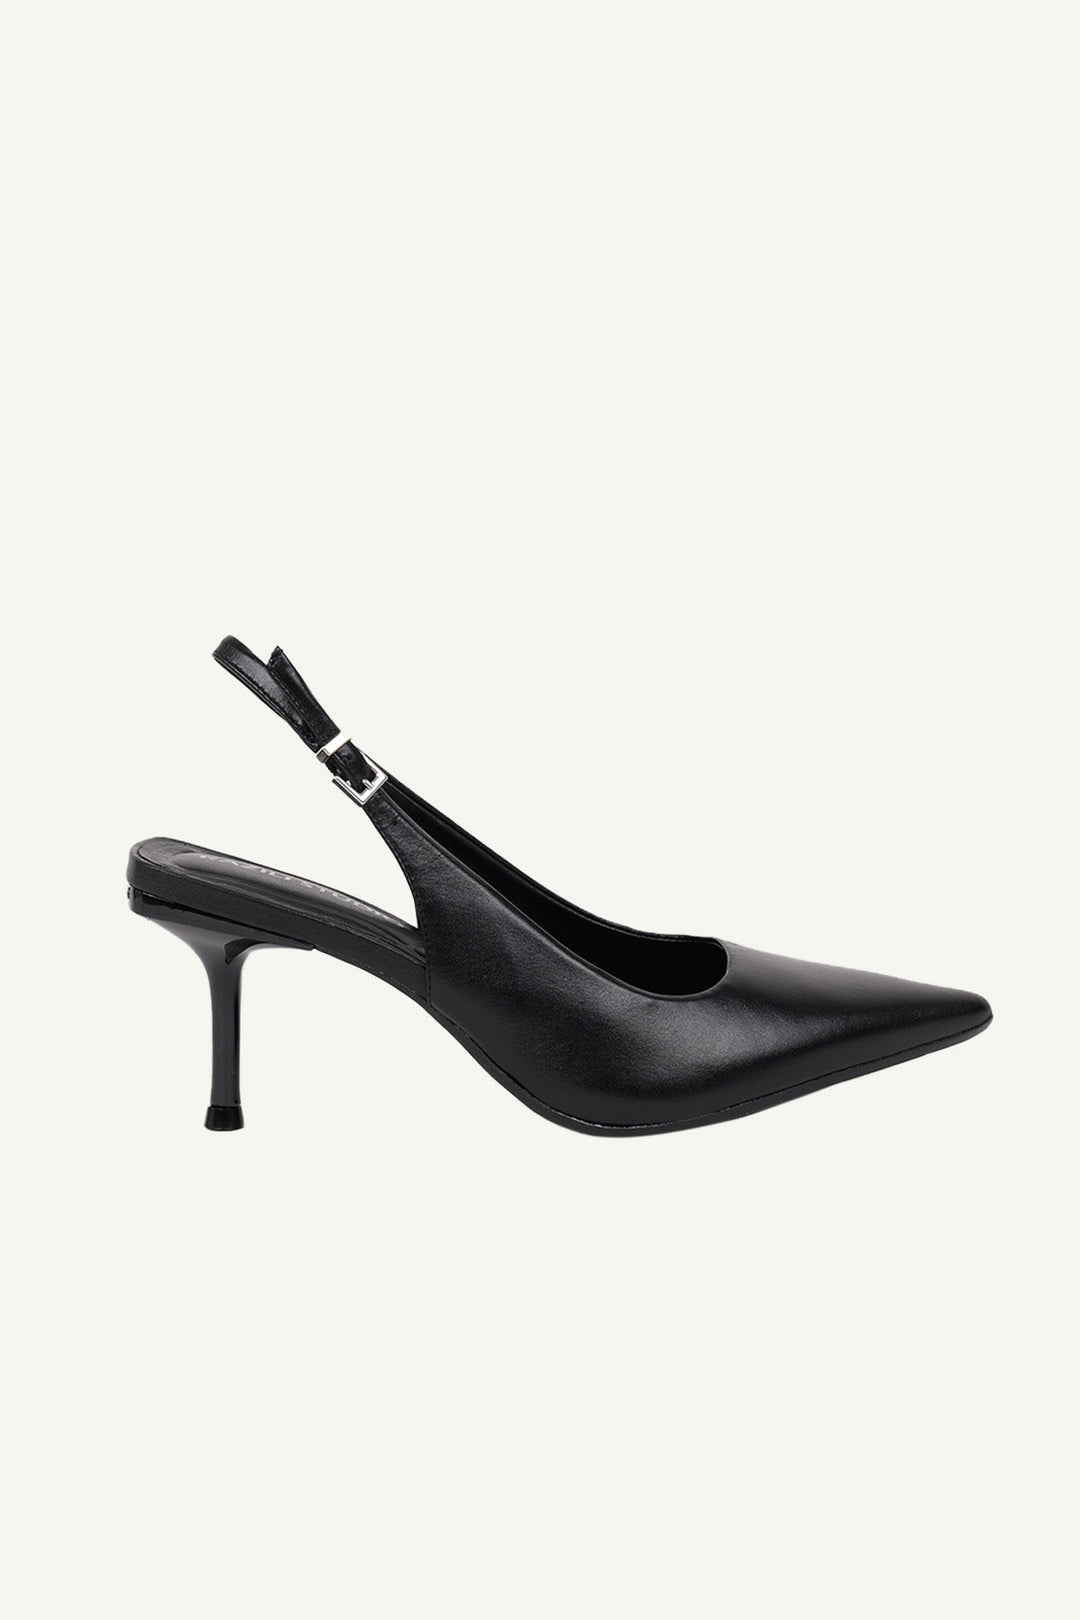 נעלי עקב שפיץ לוטוס בצבע שחור - Razili Studio